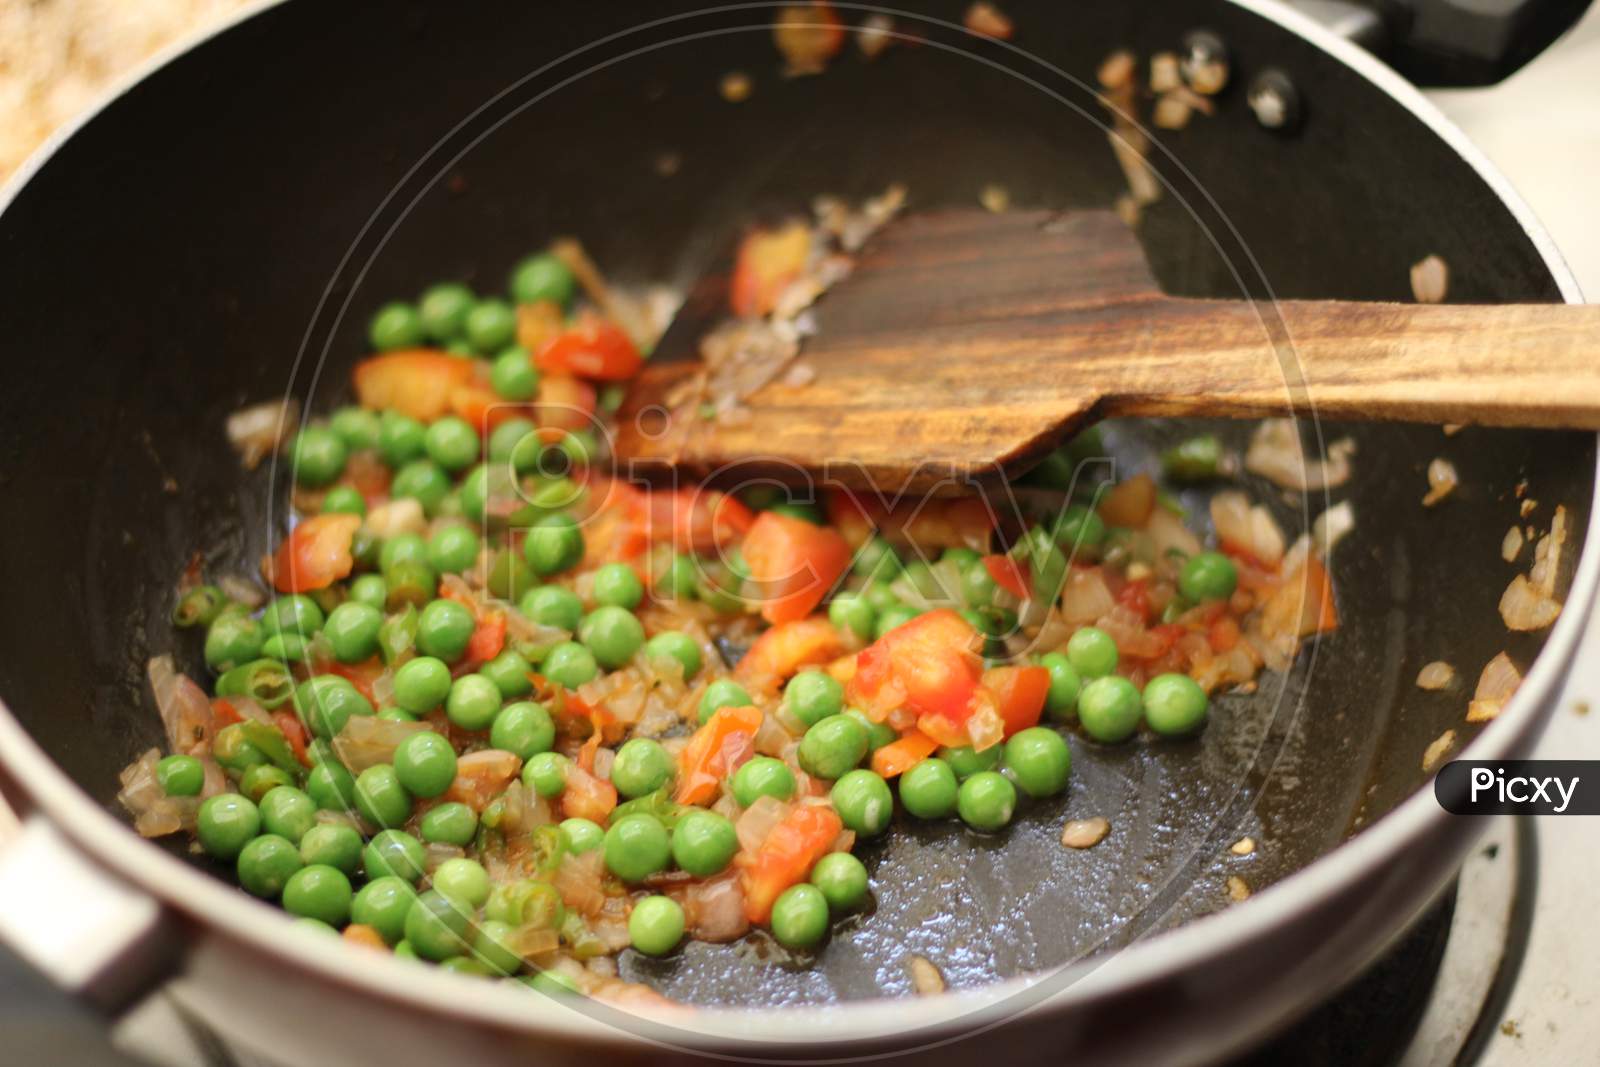 Cooking vegetables peas in a fry pan.